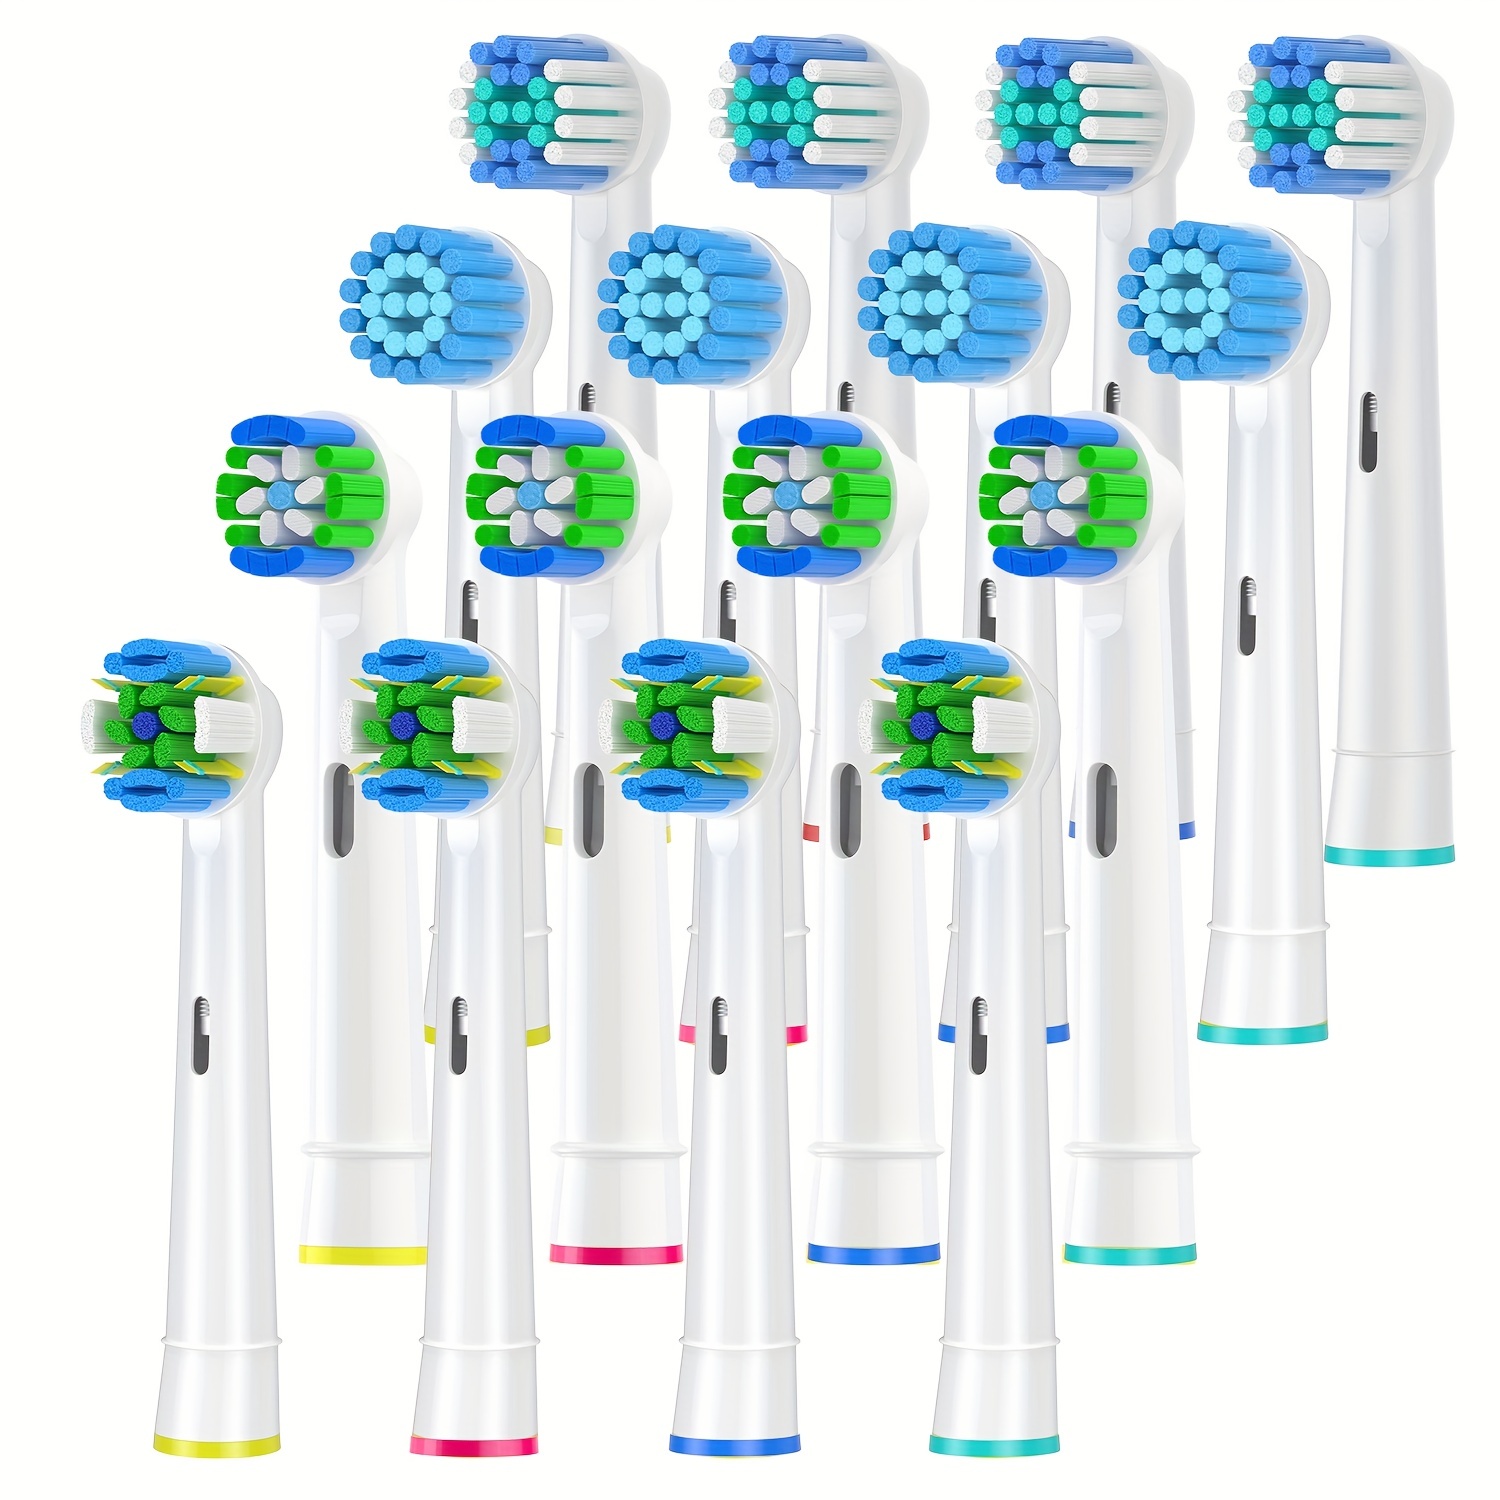 

Lot de 16 têtes de rechange pour brosse à dents compatibles avec Braun pour brosse à dents électrique Oral B, têtes de rechange pour brosse à dents, pour brosse à dents électrique Pro Smart (blanc)